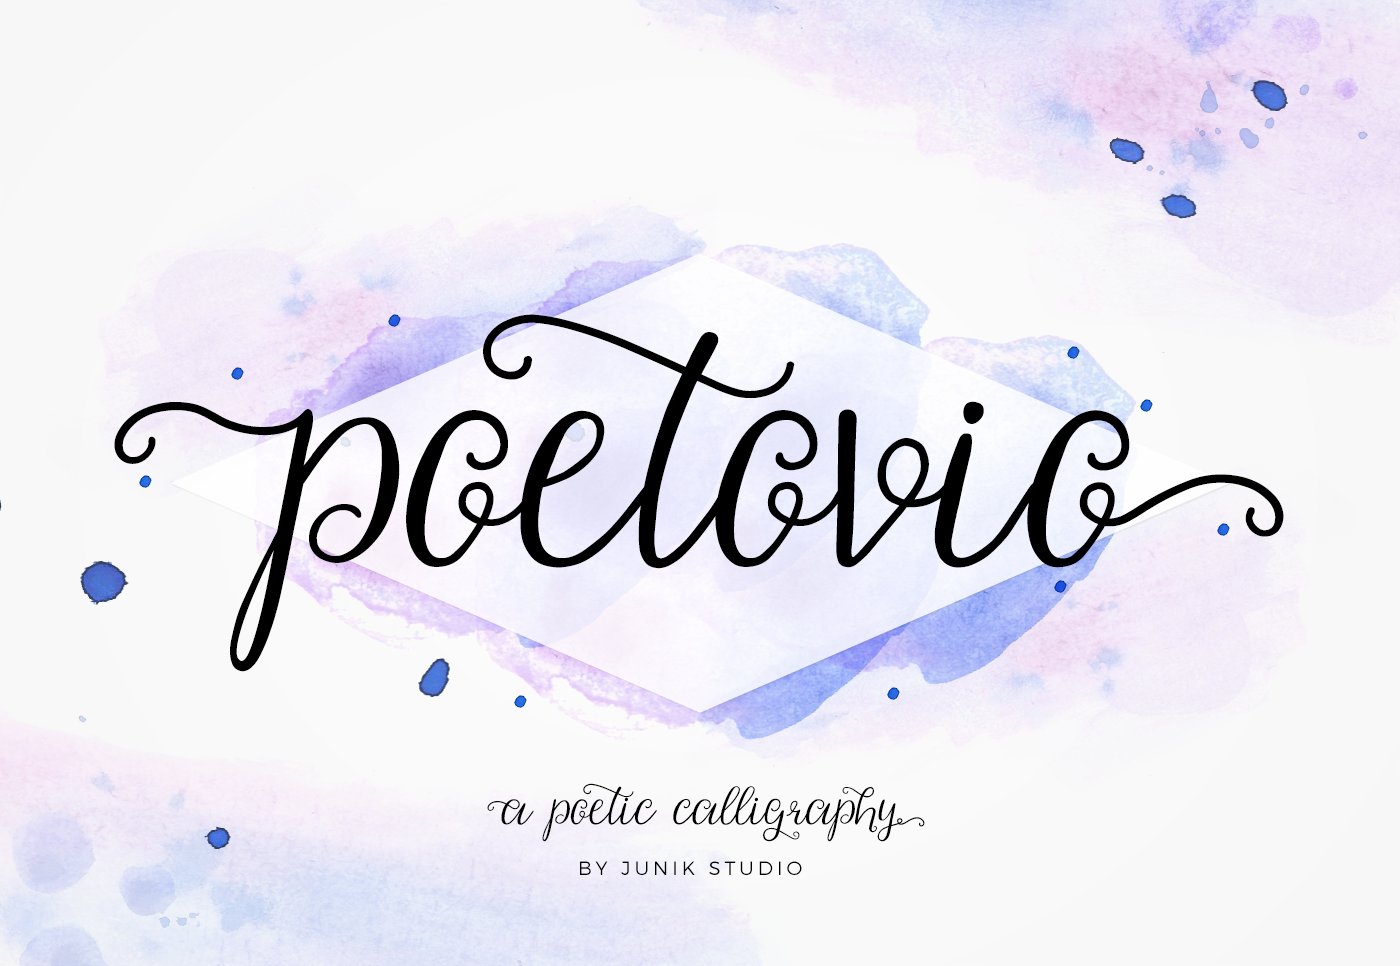 Poetovio - Poetic calligraphy cover image.